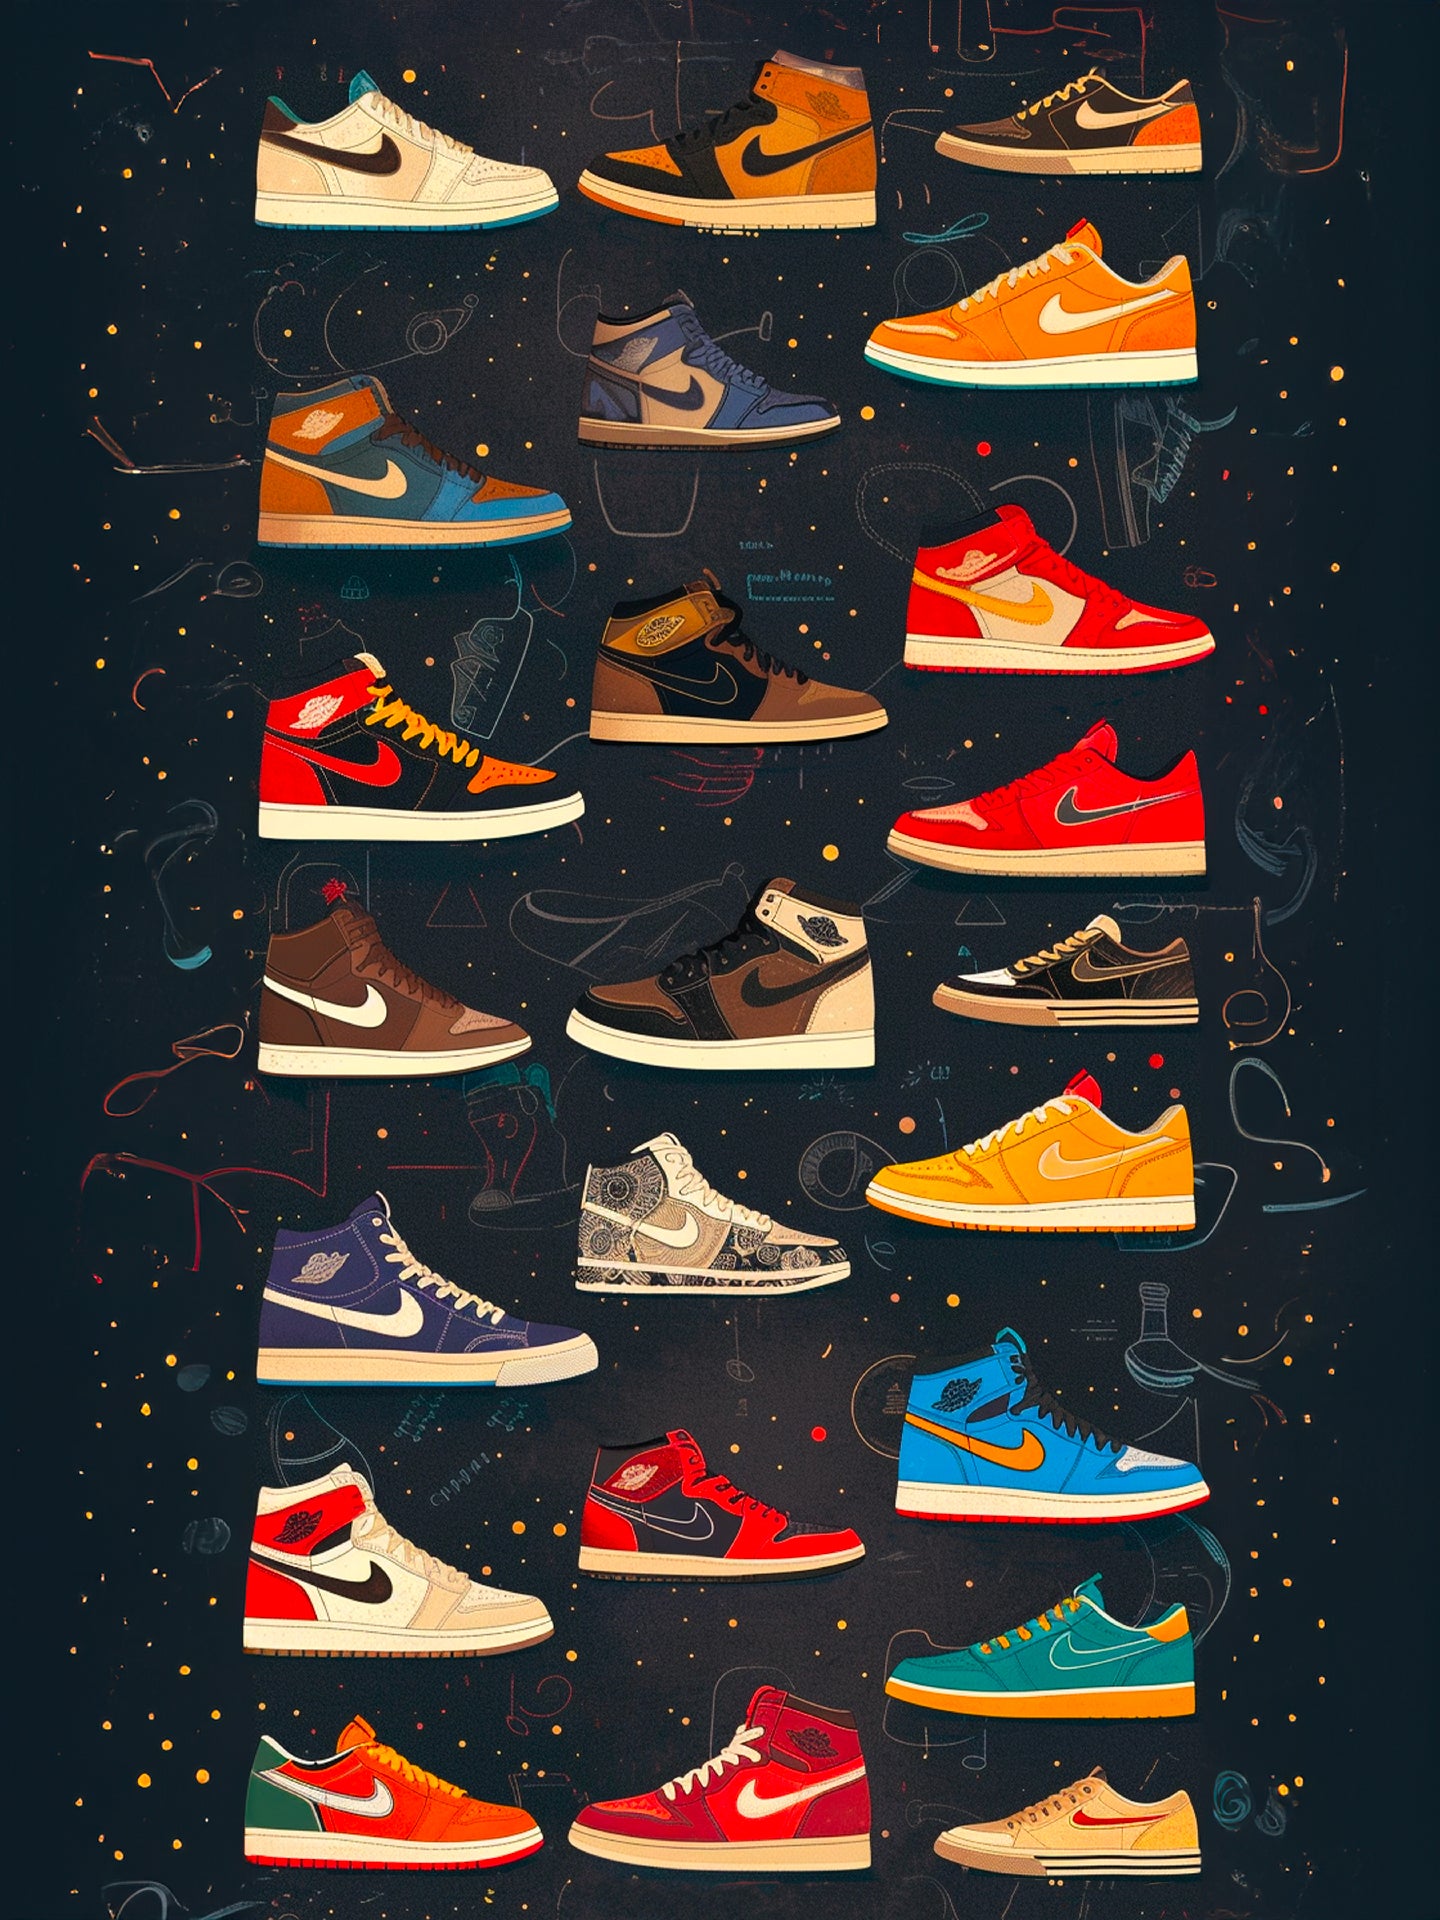 Tableau décoratif affichant une gamme de baskets Nike Air Jordan sur fond noir étoilé.